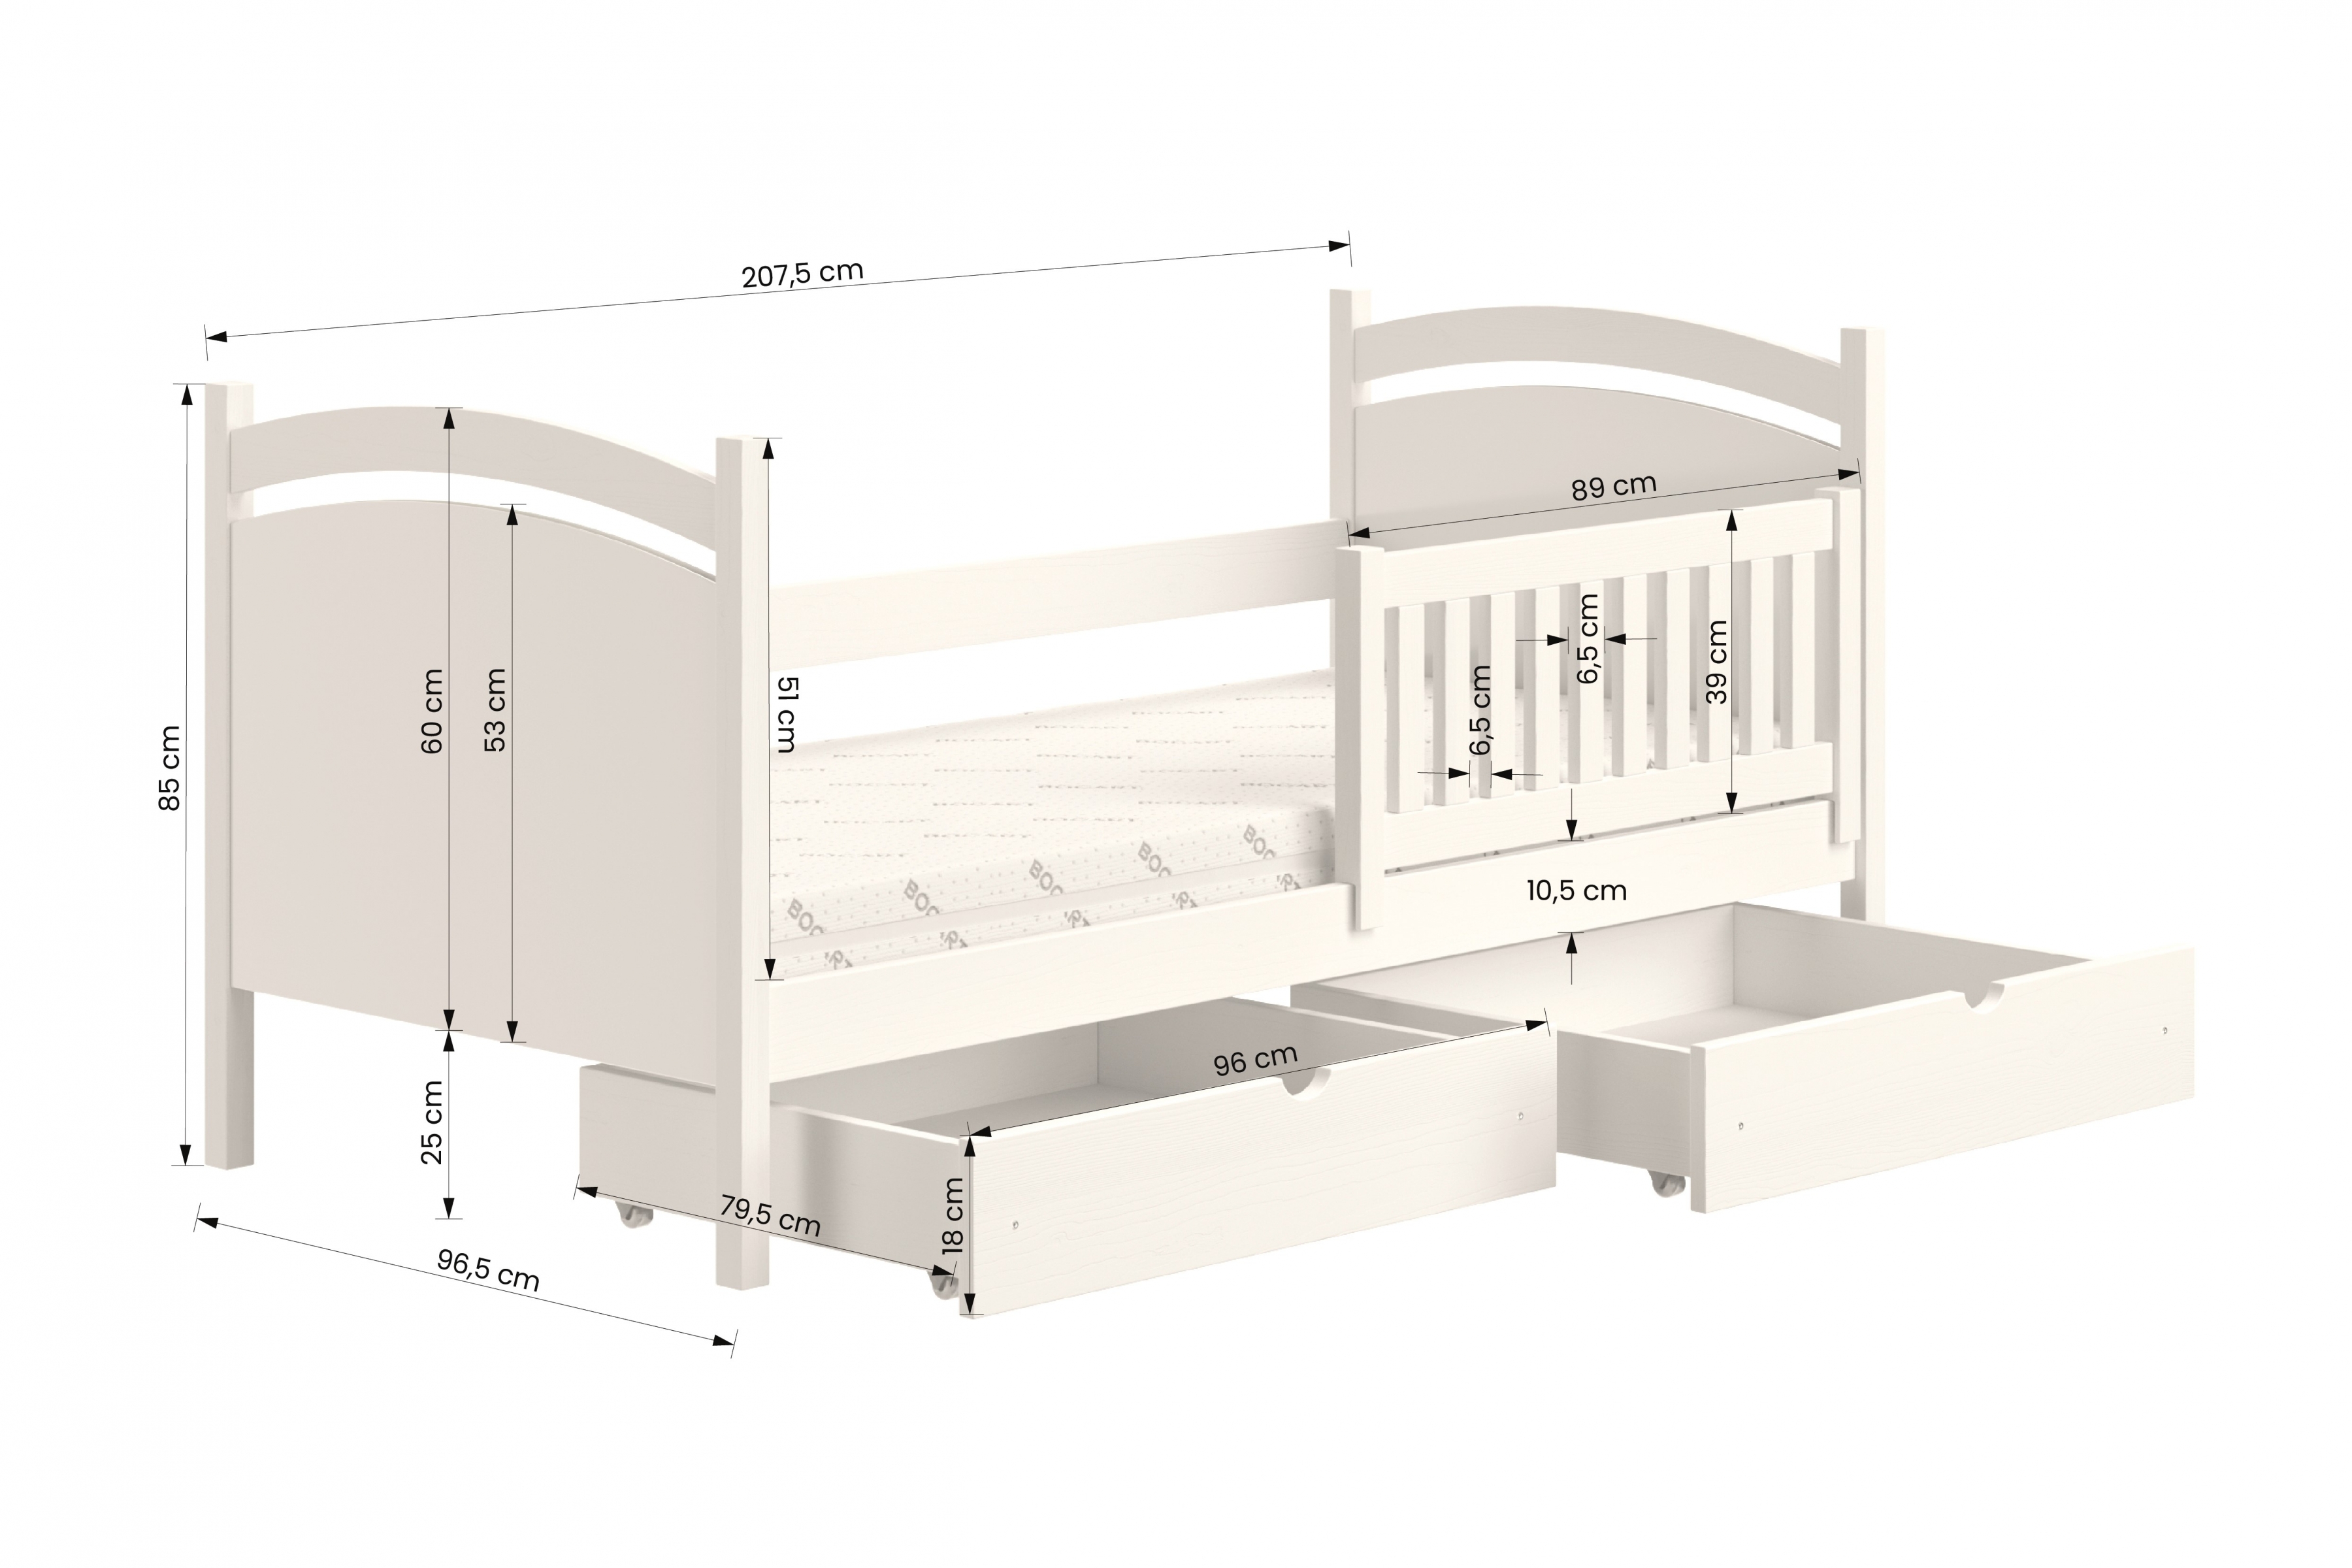 Detská posteľ s tabuľou Amely - Farba Biely, rozmer 90x200 Posteľ dzieciece z tablica suchoscieralna Amely - Rozmery